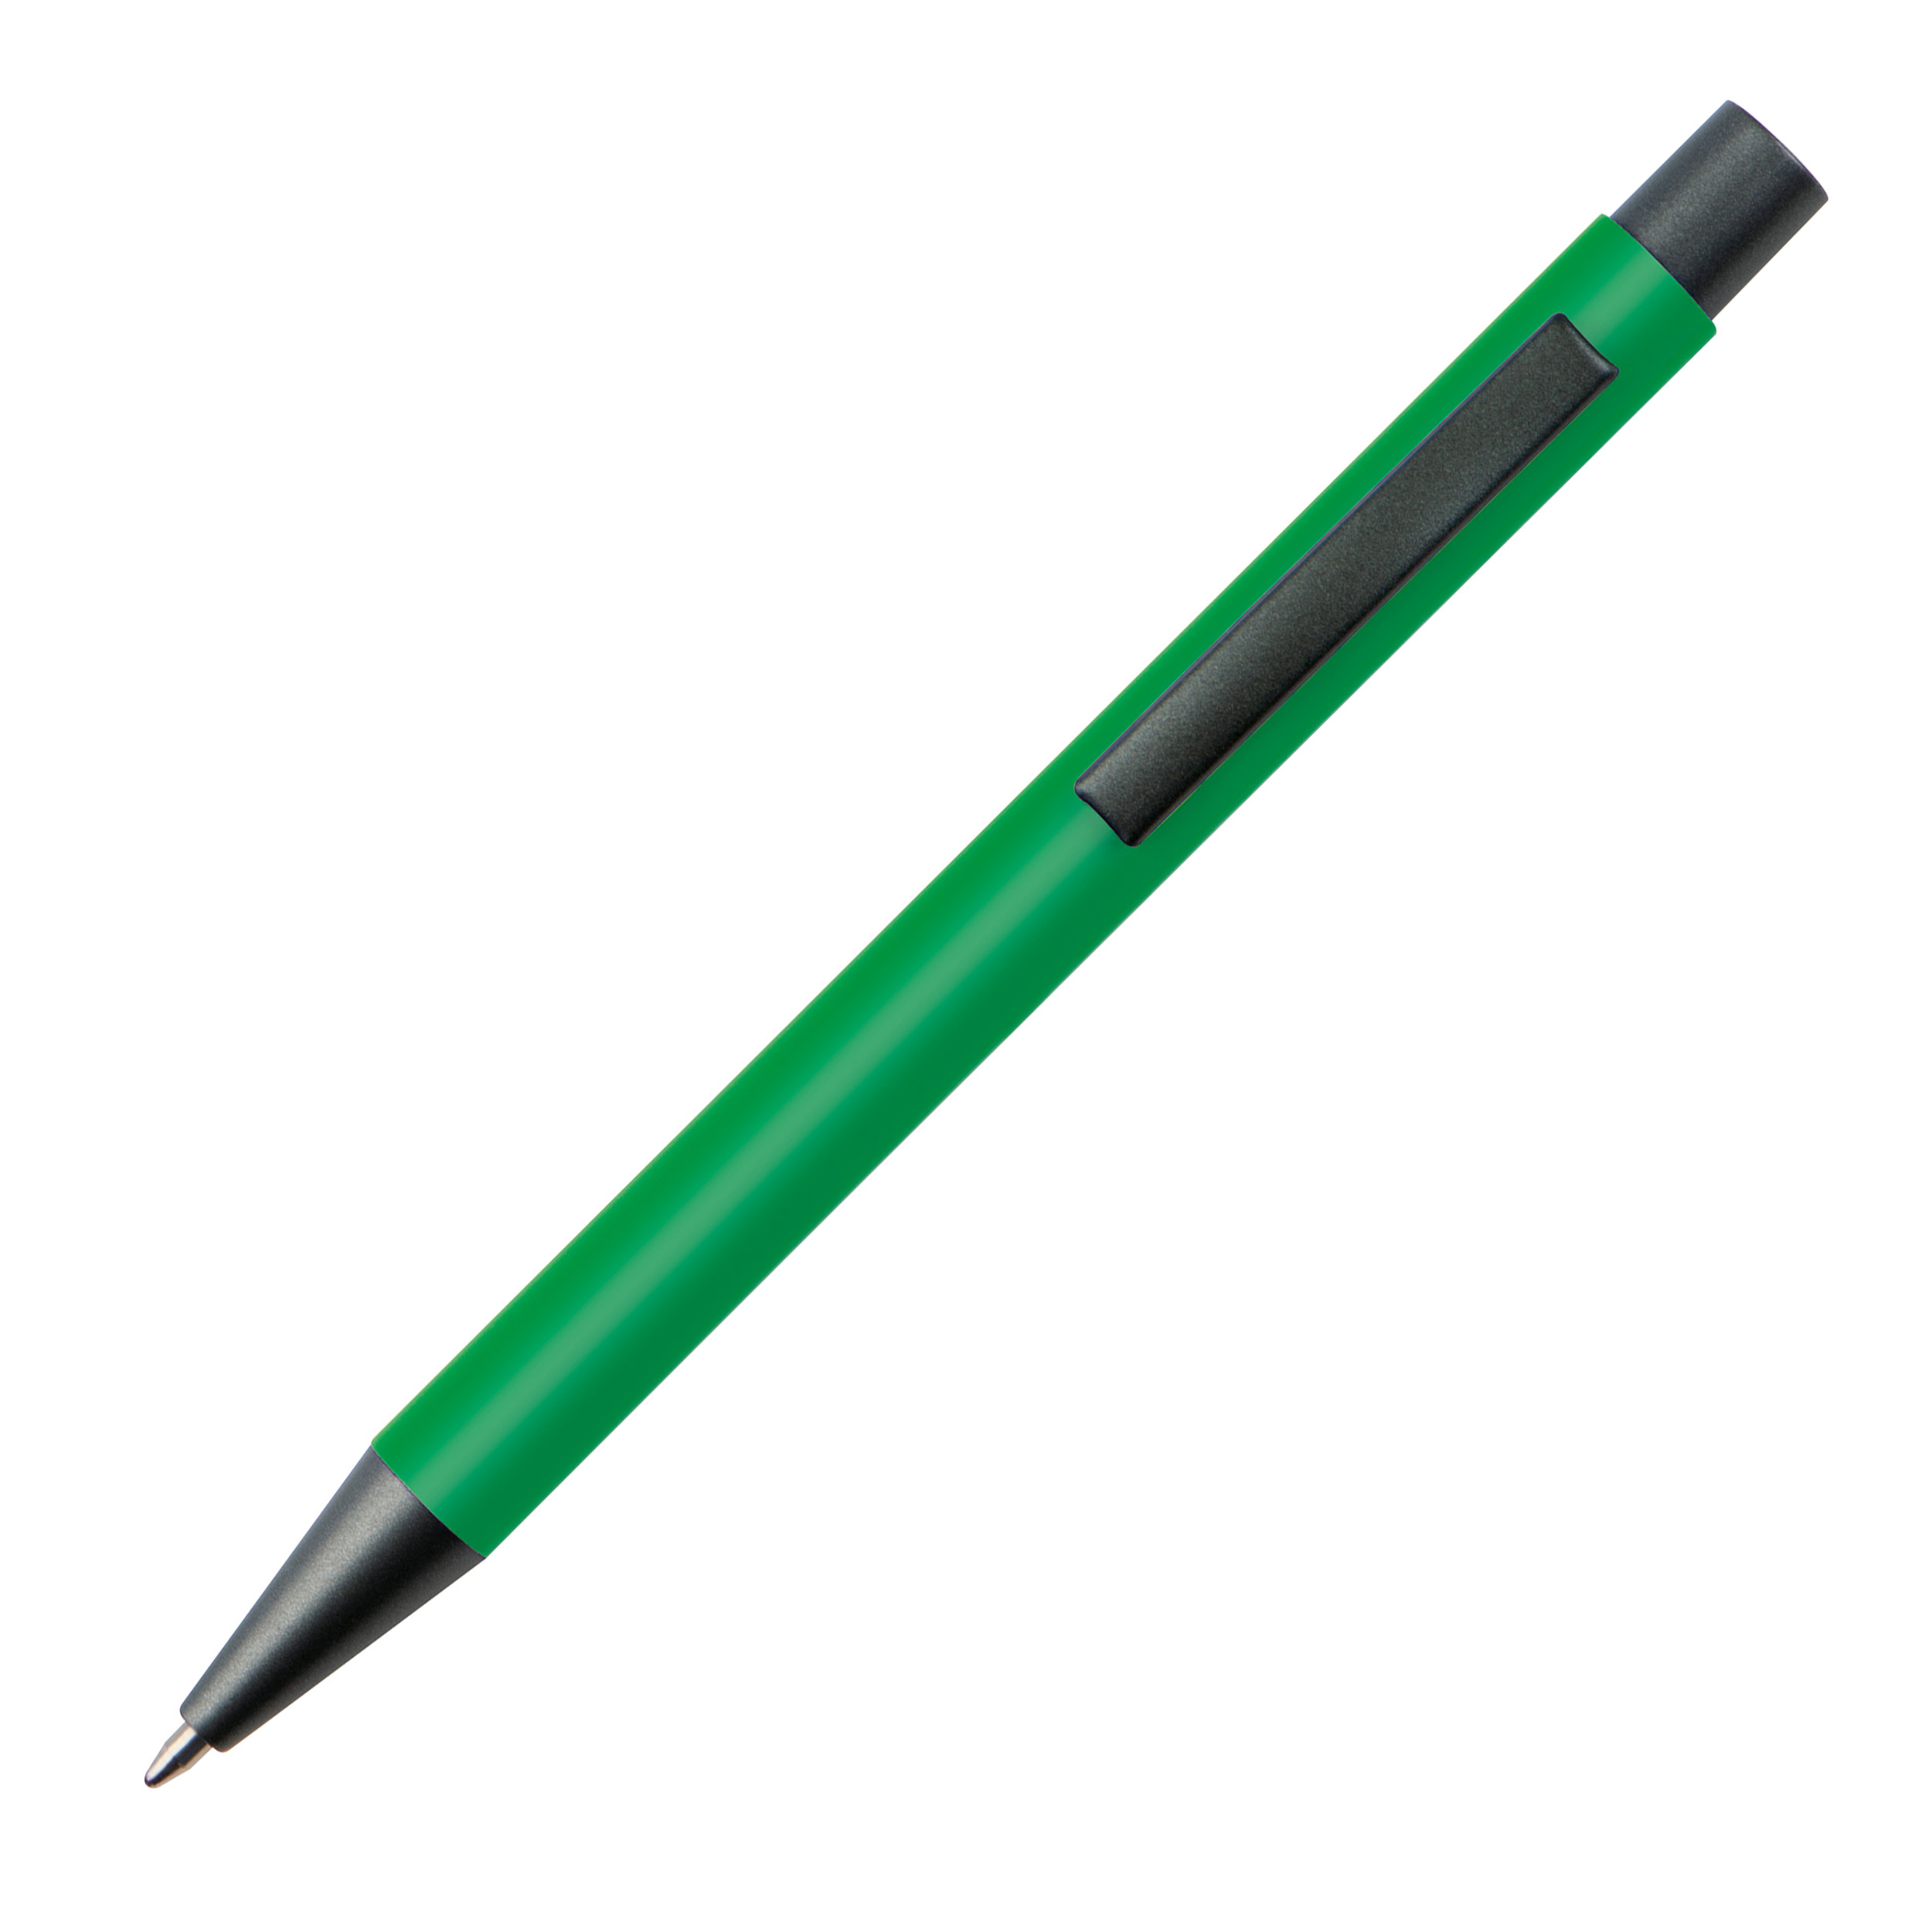 Bolígrafo de plástico con clip metálico.